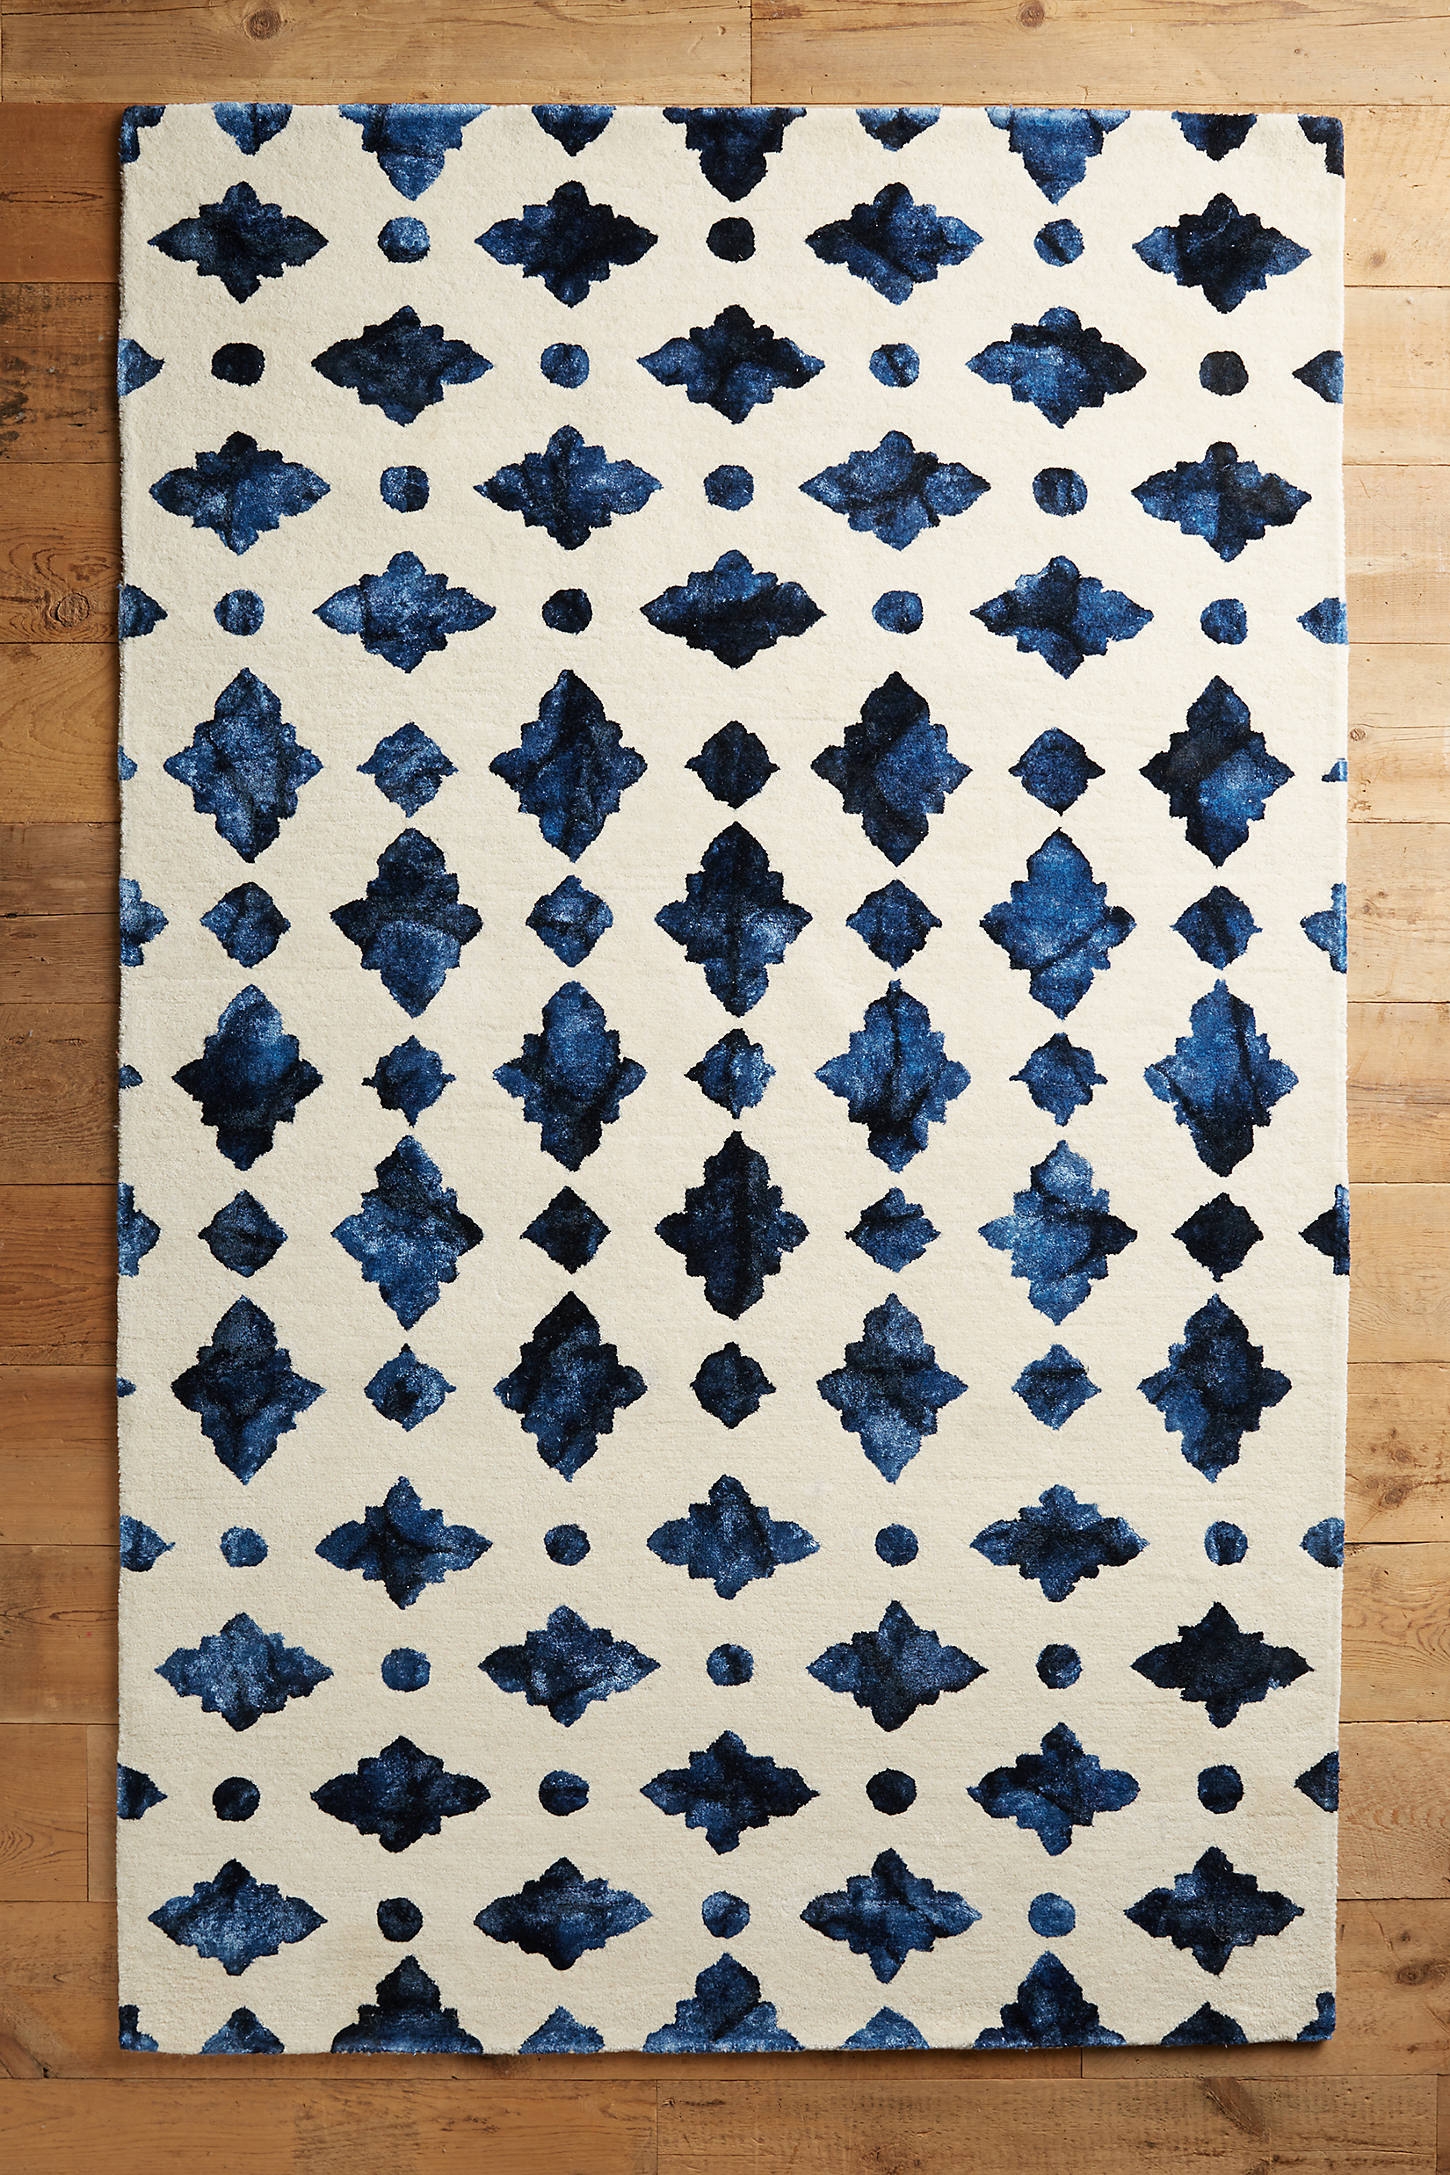 Moroccan Tile Rug, 9'x12' - Image 0